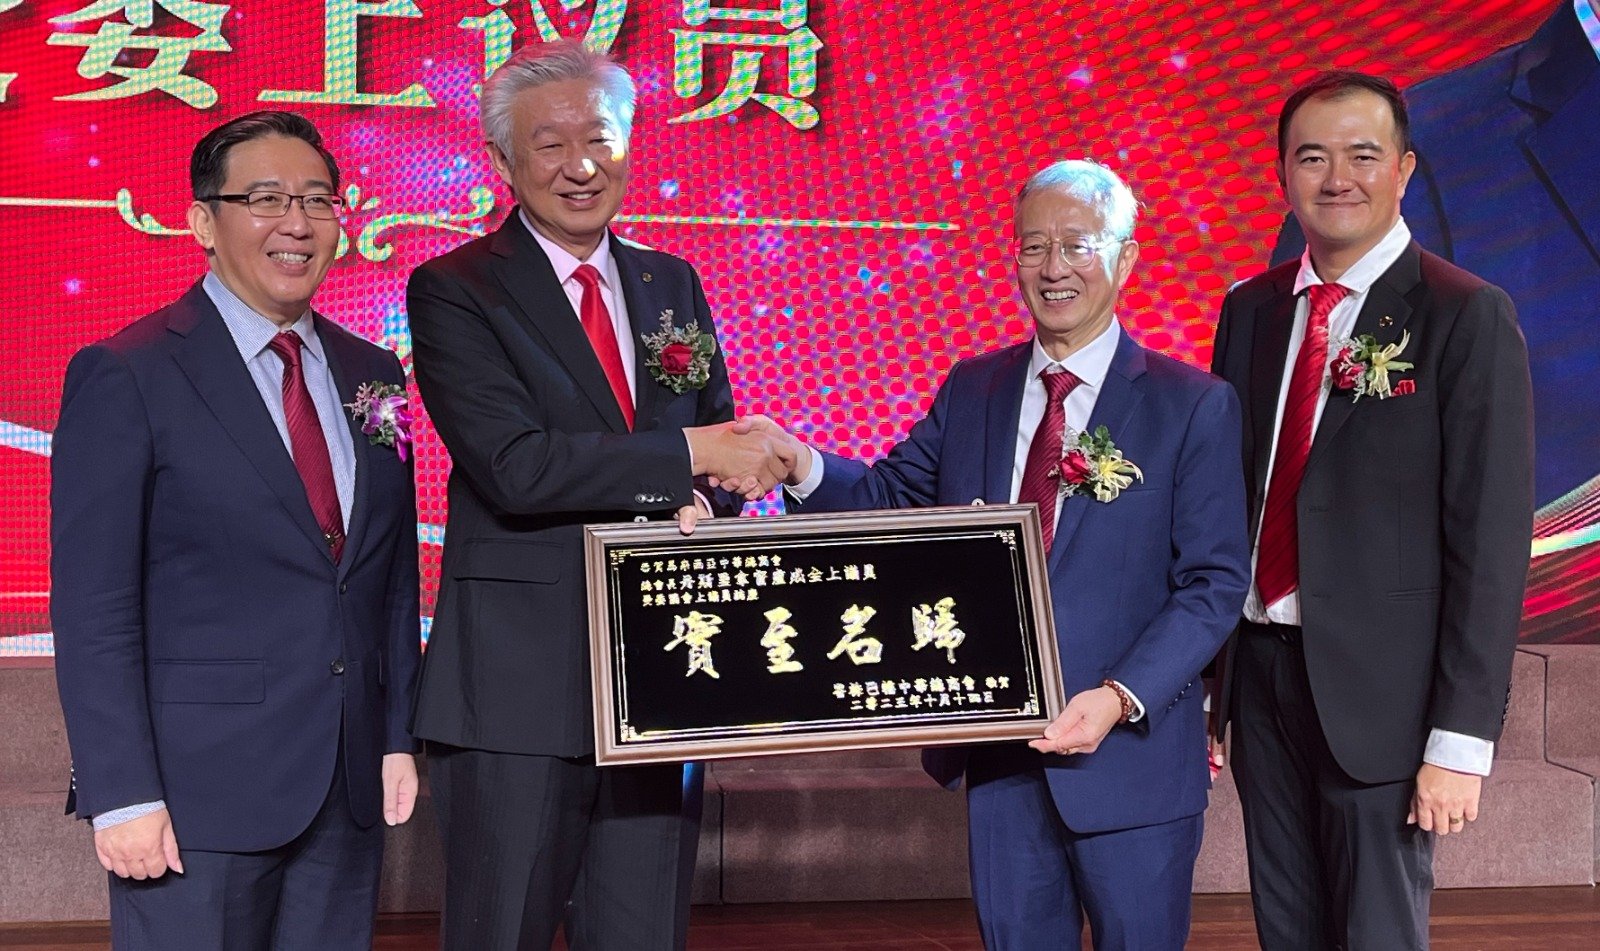 峇株巴辖中华总商会送上牌匾祝贺卢成全（左2）出任国会上议员，左为许常健、右起为颜仁浩以及傅庆隆。